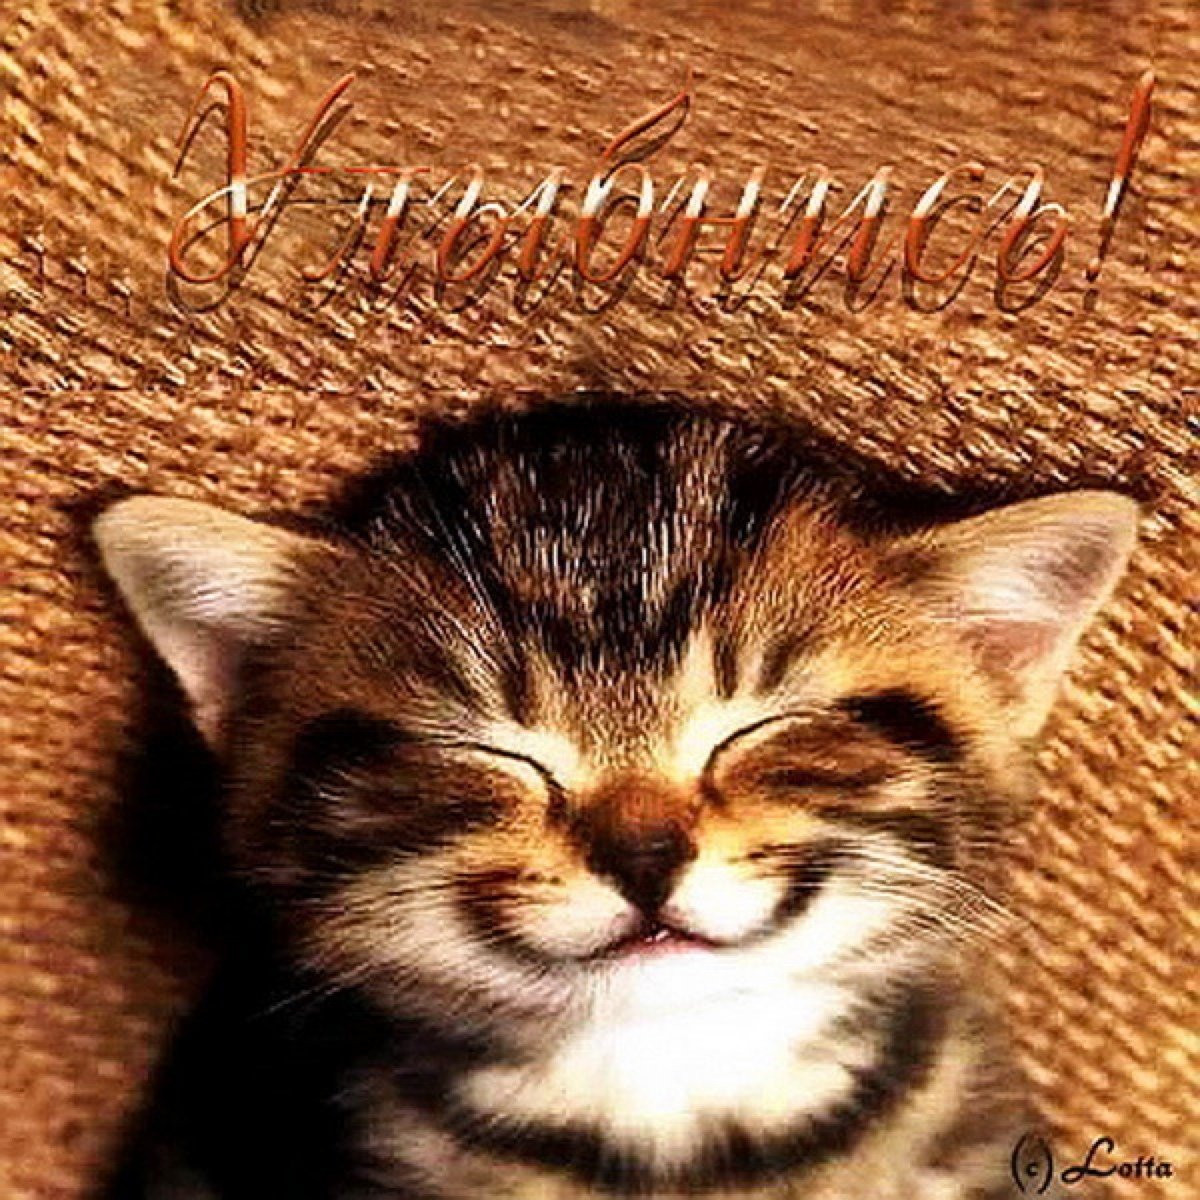 Улыбайся чаще милый. Улыбнись картинки. Котенок улыбается. Котенок хорошего настроения. Улыбнись милая.